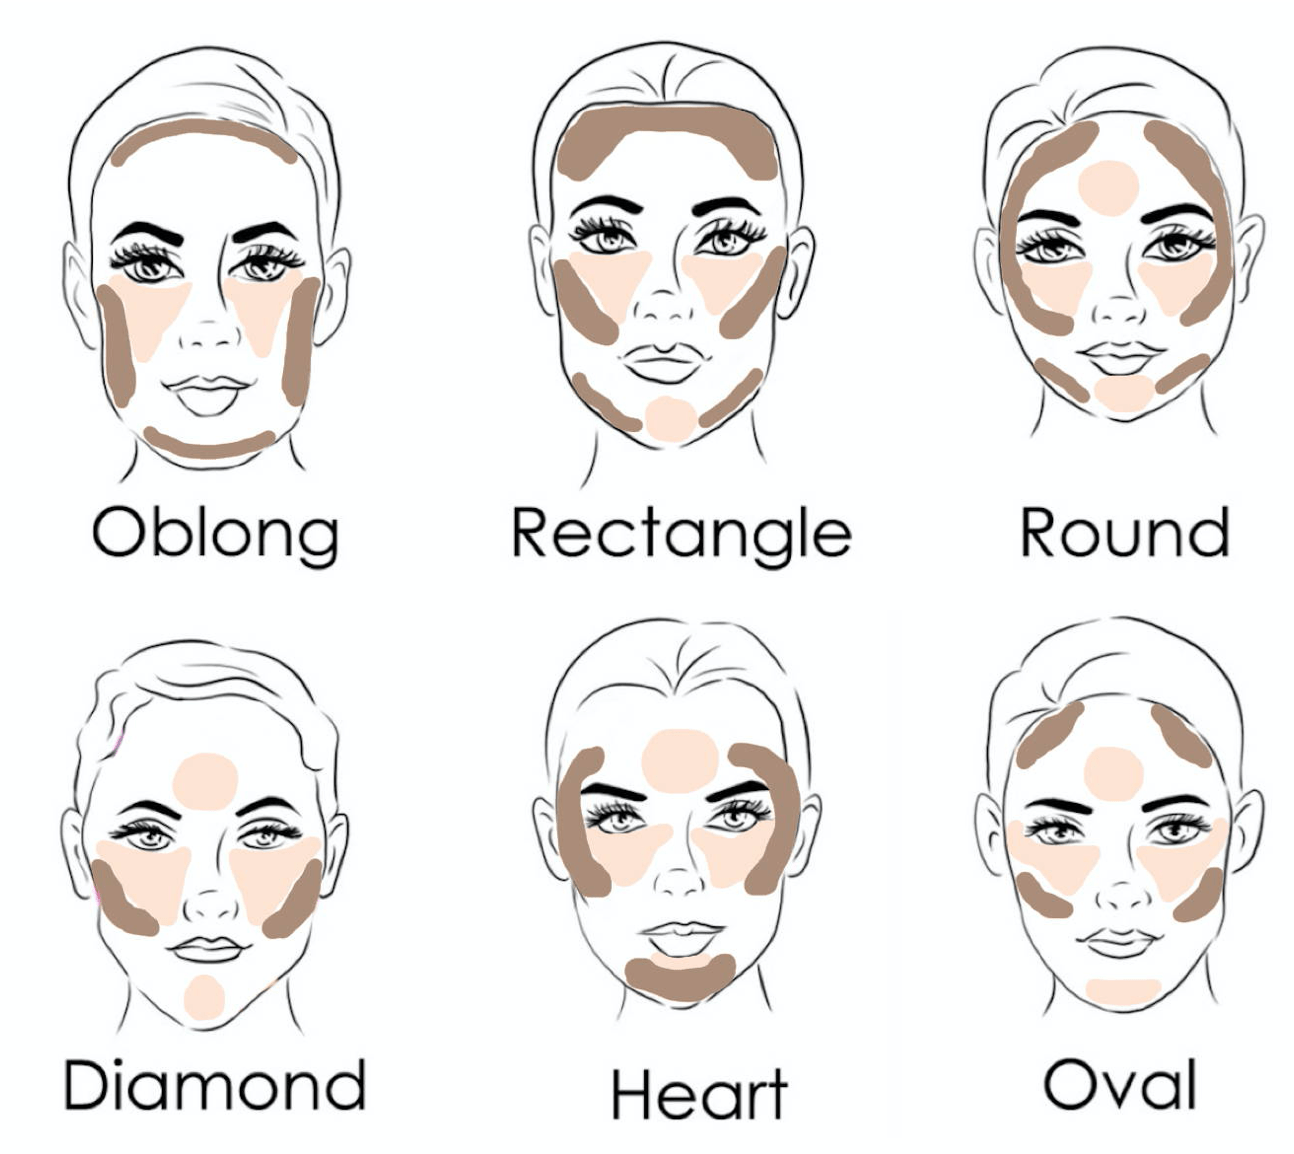 Как делать контуринг для разных типов лица: схема и пошагово, фото до и после